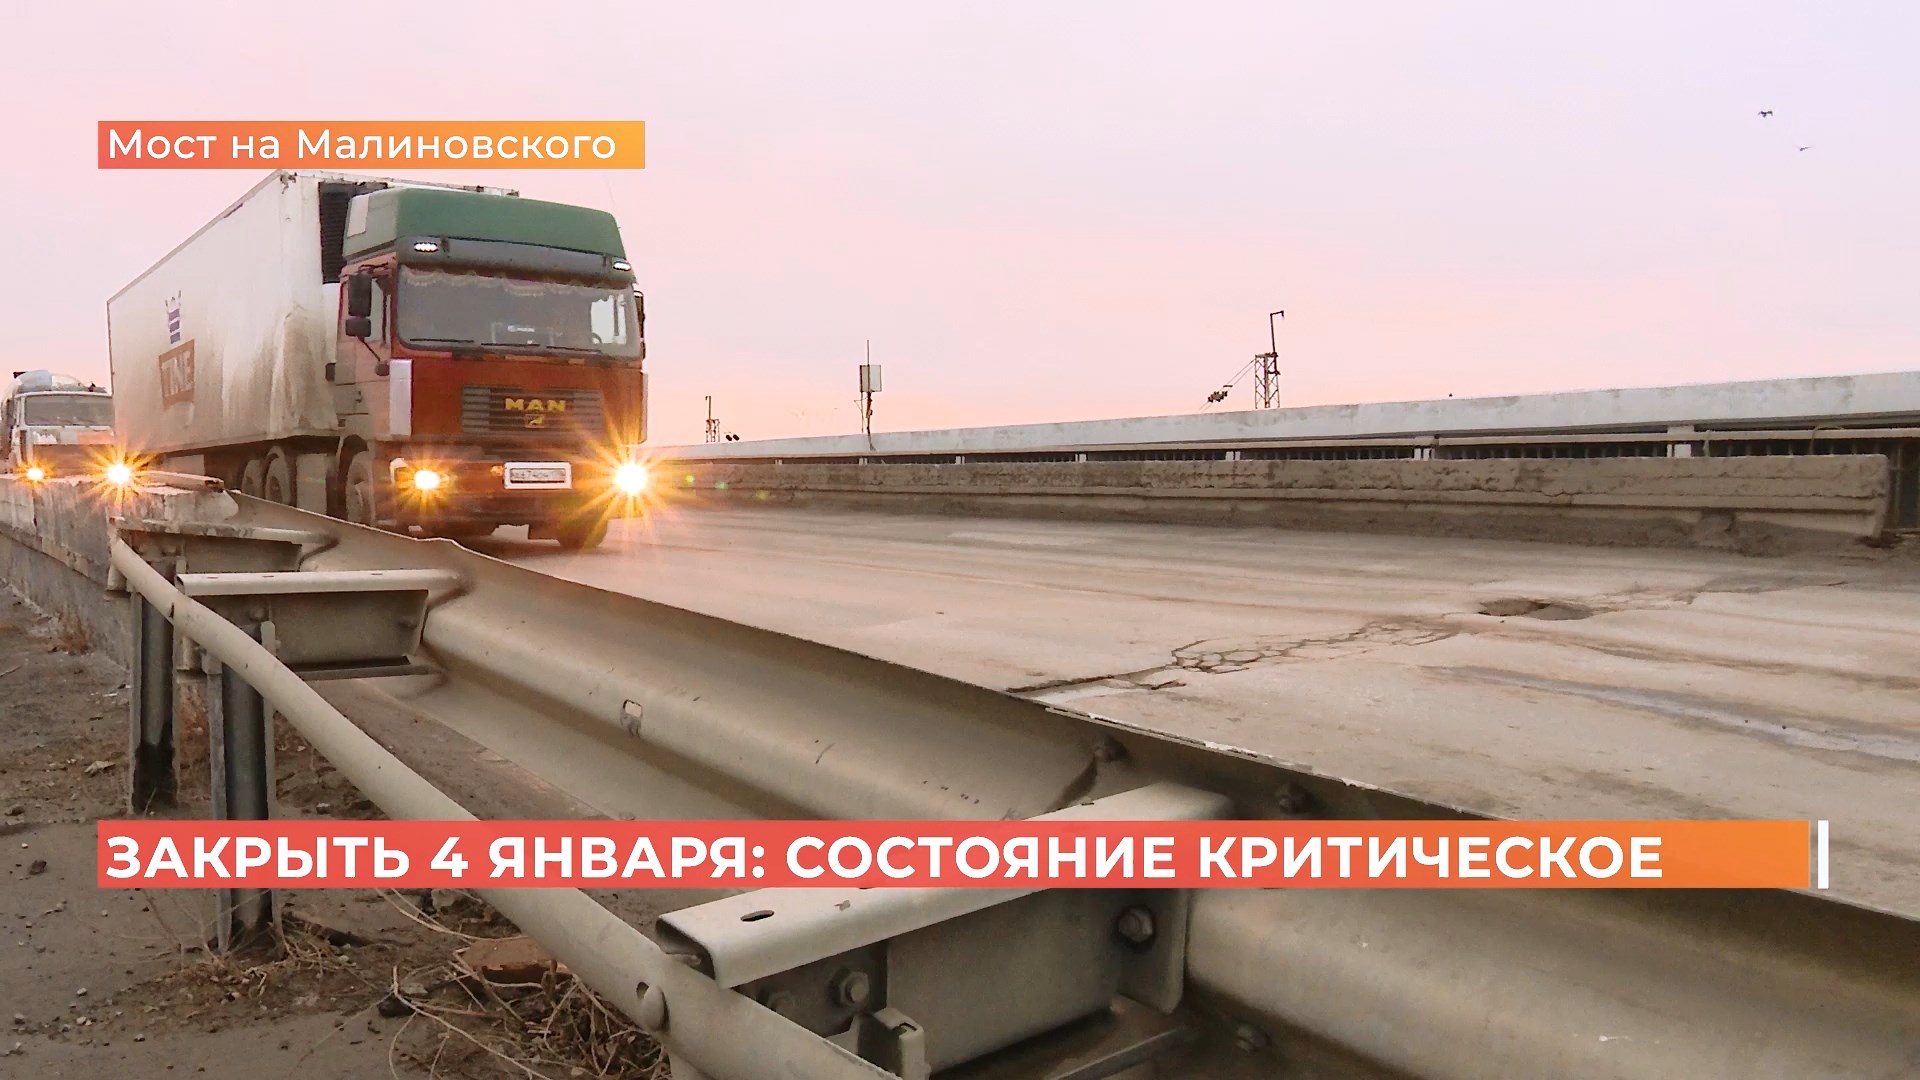 Крюк в 80 километров: как водителям придётся объезжать закрытый мост Малиновского